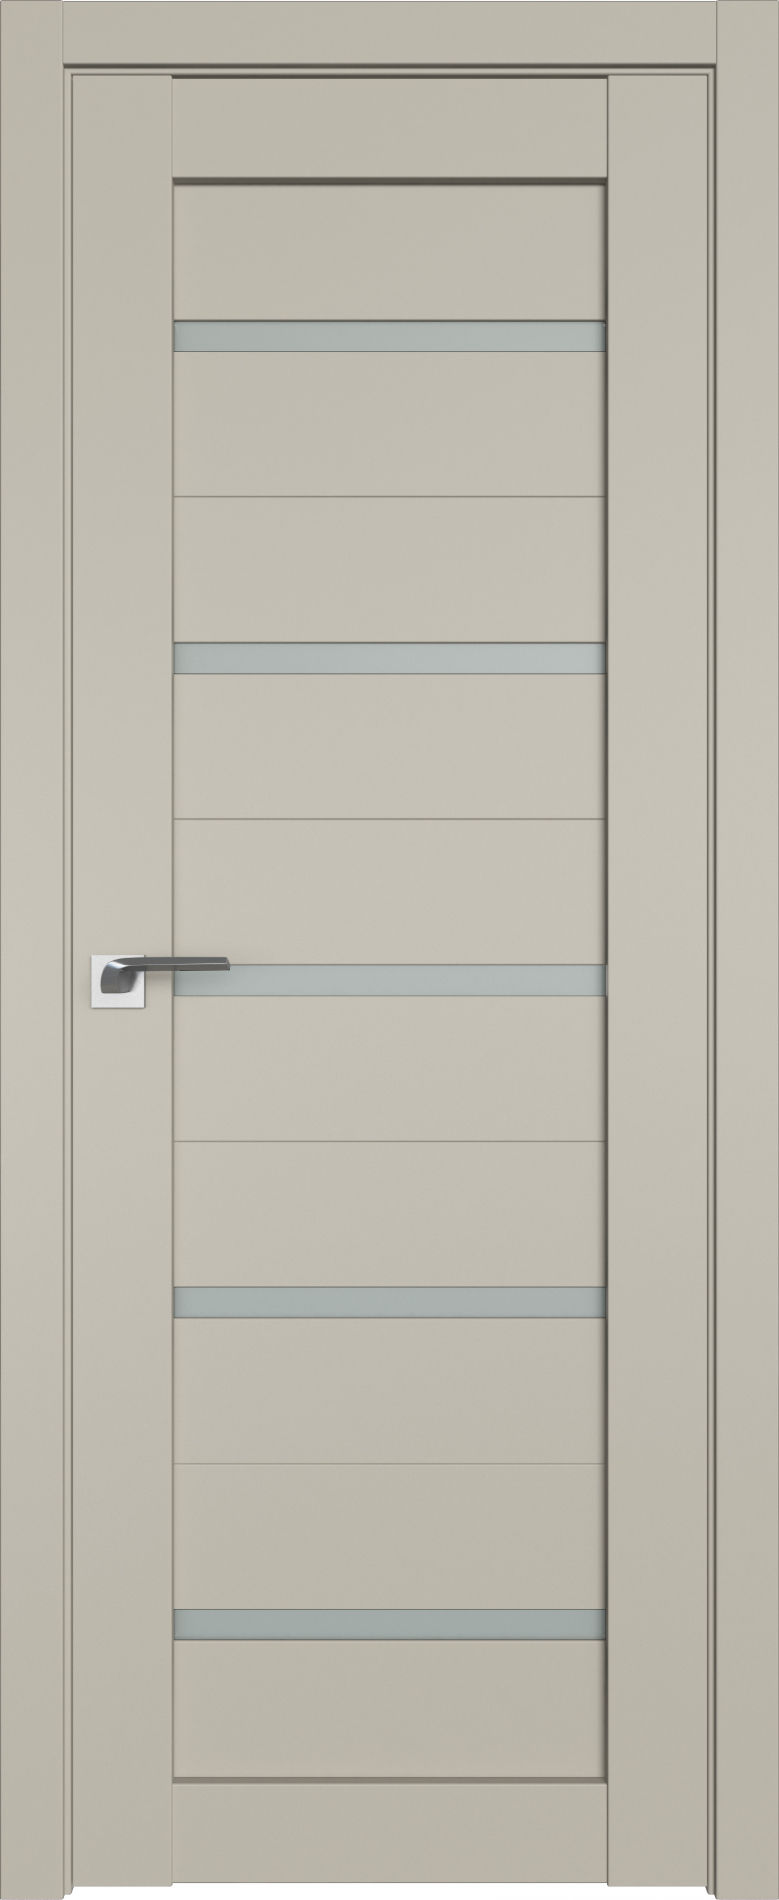 межкомнатные двери  Profil Doors 7U шеллгрей